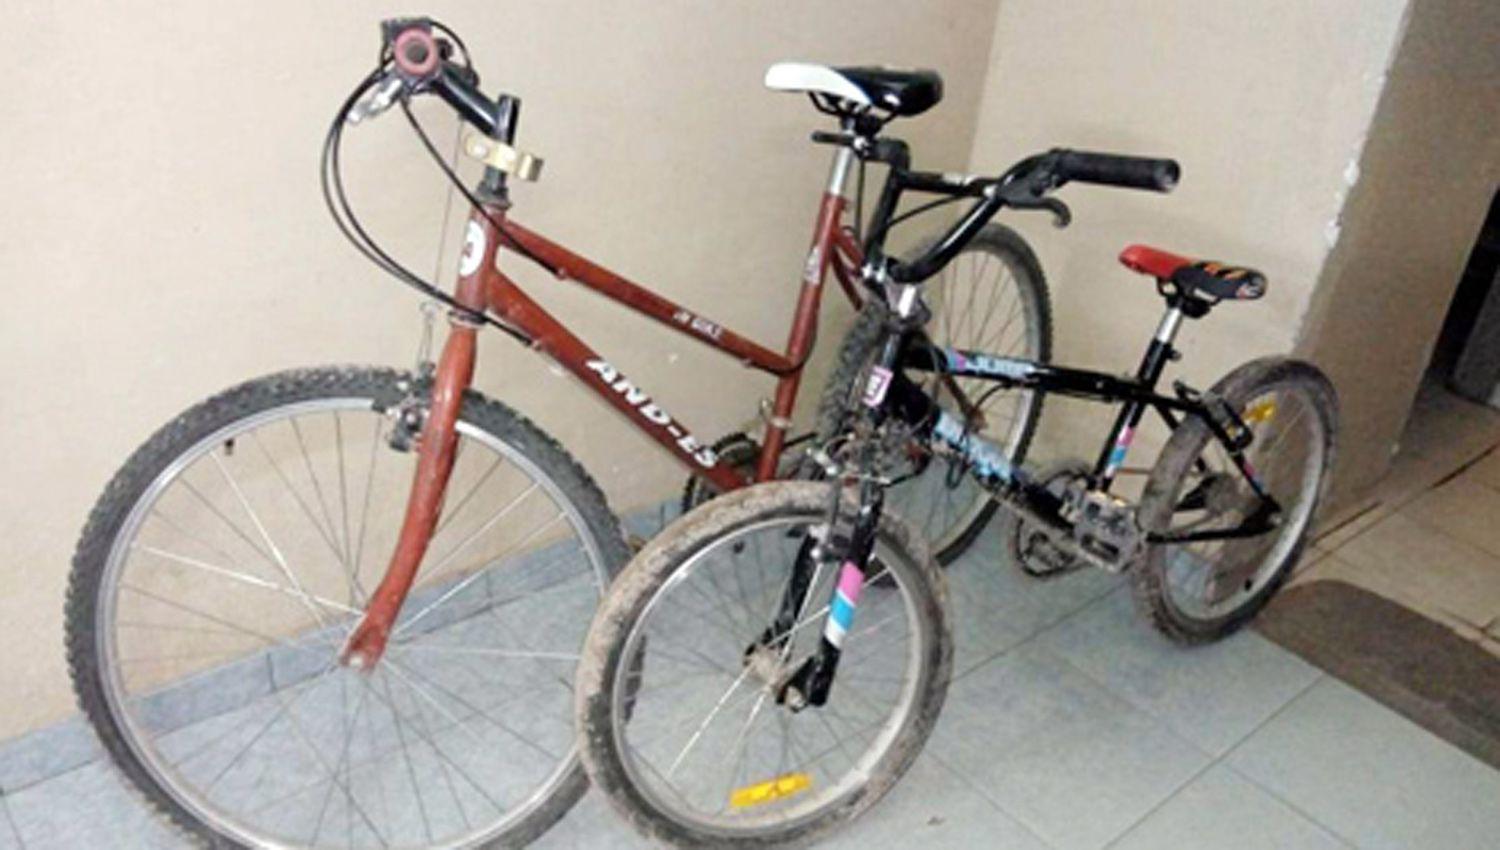 Saltoacute la tapia perimetral de una casa y roboacute dos bicicletas que las vendioacute por tres mil pesos